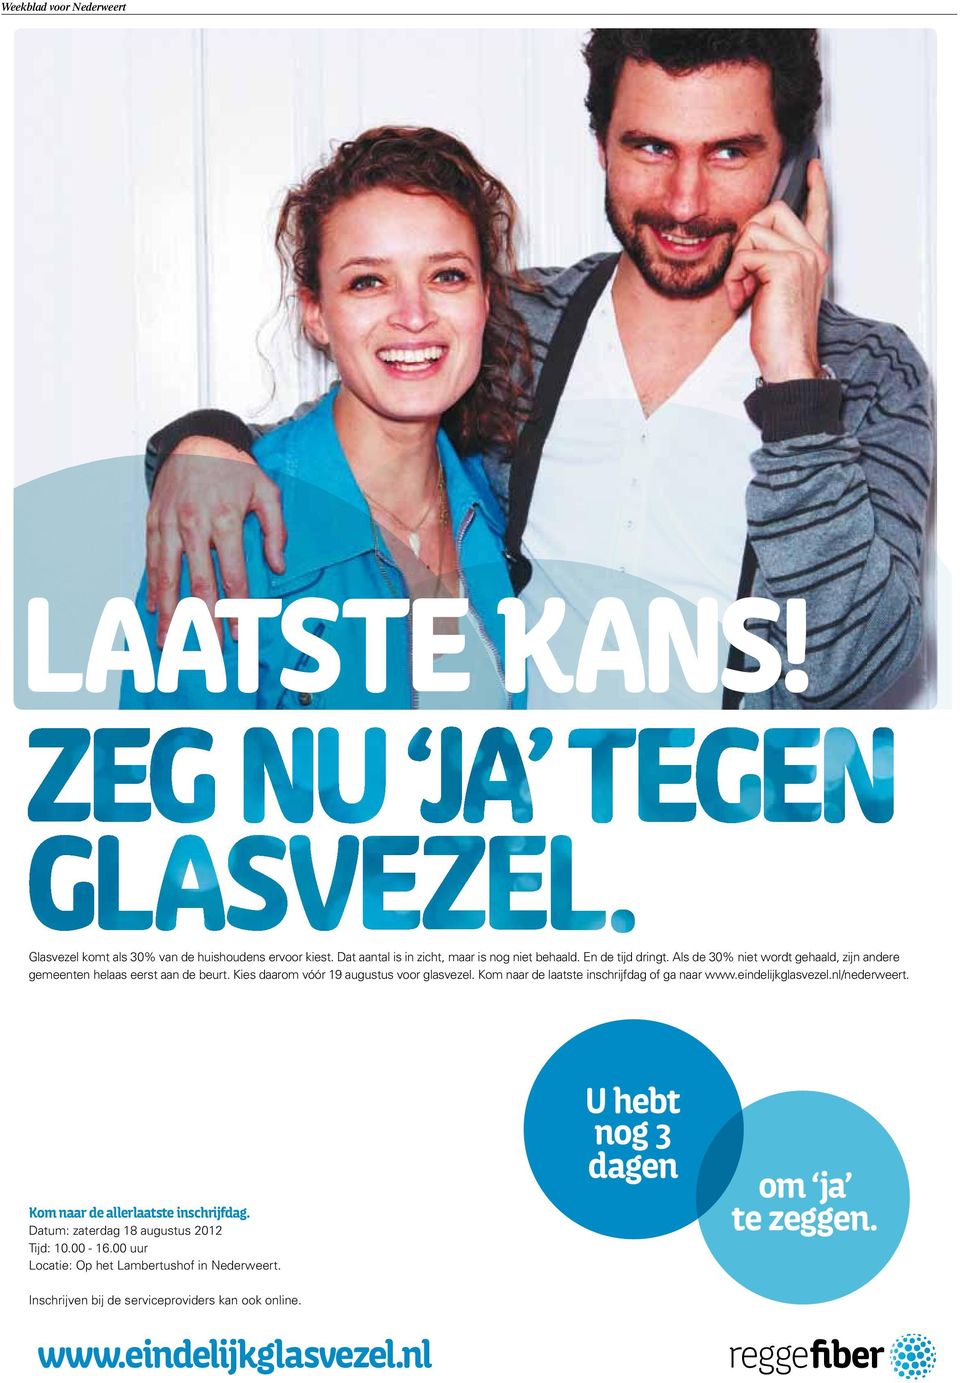 Kies daarom vóór 19 augustus voor glasvezel. Kom naar de laatste inschrijfdag of ga naar www.eindelijkglasvezel.nl/nederweert.